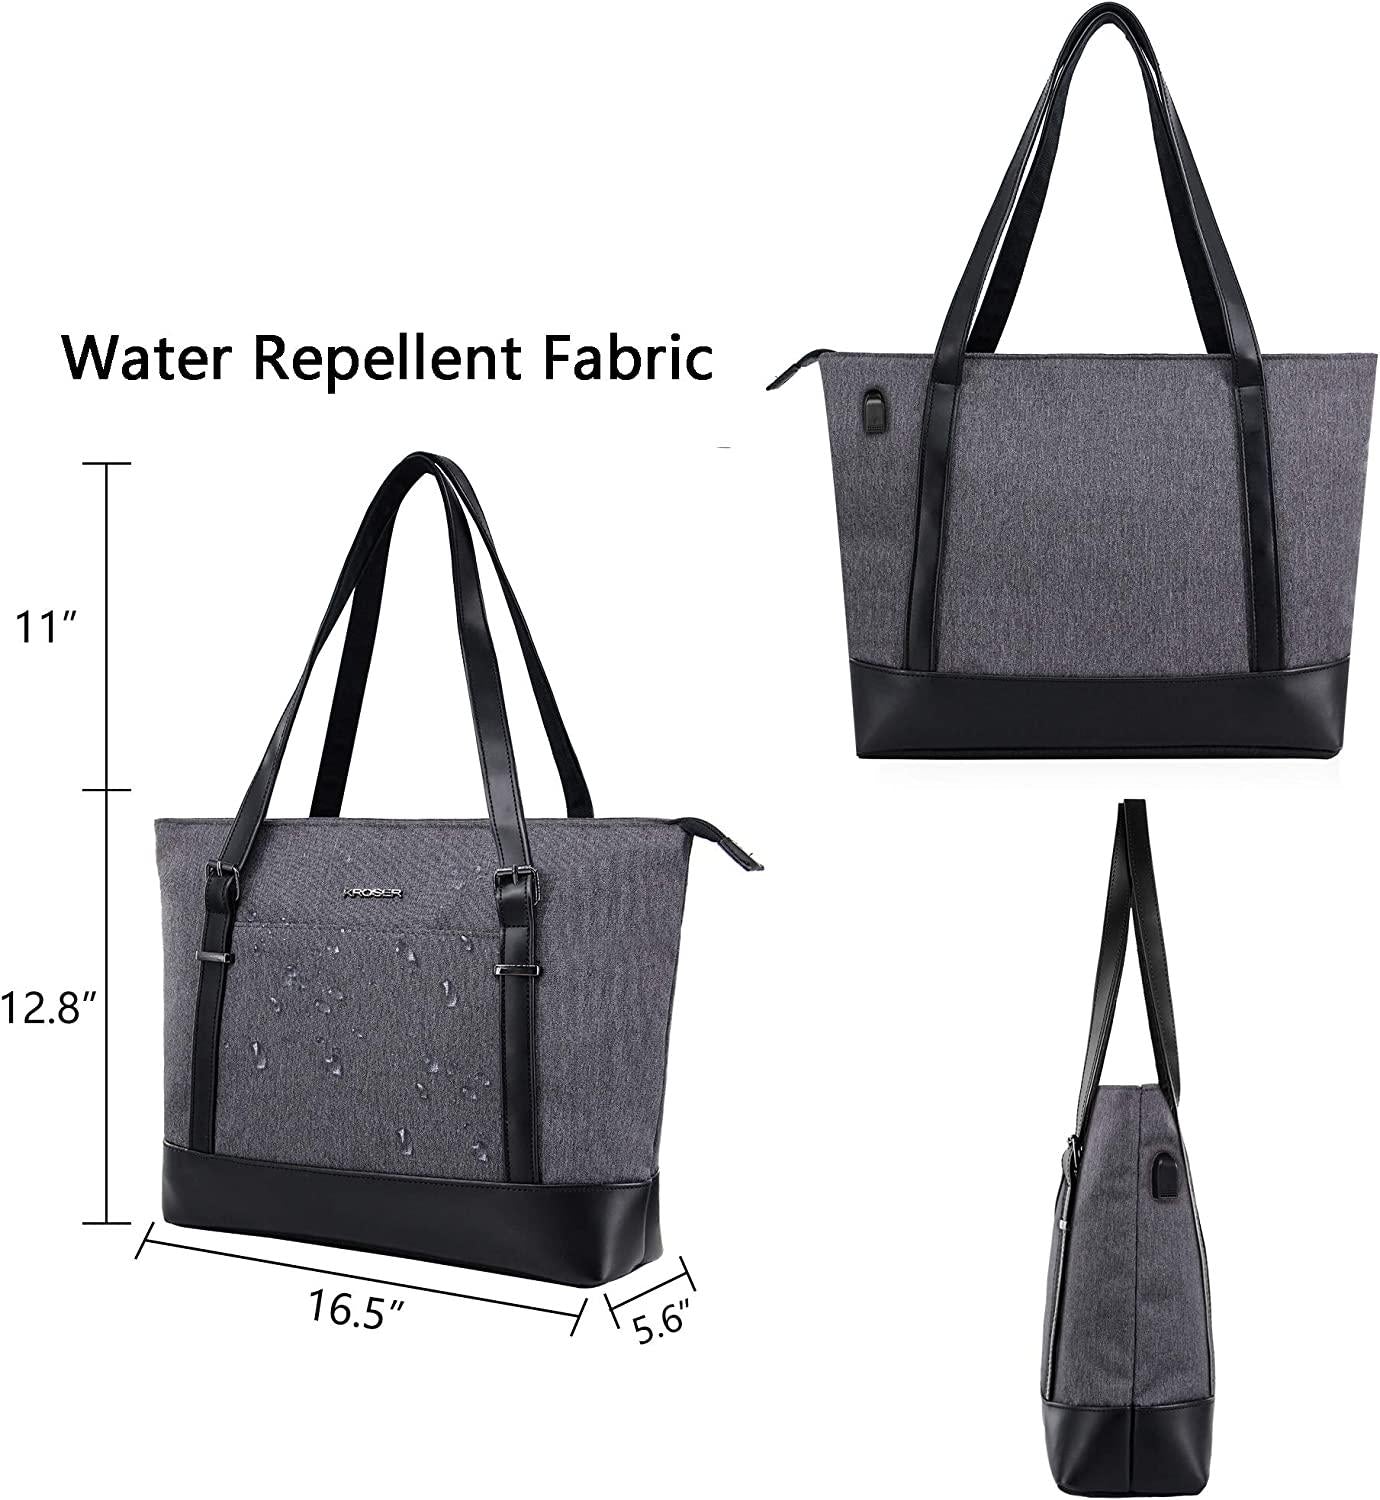 KROSER, KROSER Laptop Tote Bag 15.6 Inch Large Shoulder Bag Lightweight Water-Repellent Women Stylish Handbag for Work/Business/School/College/Travel-Grey